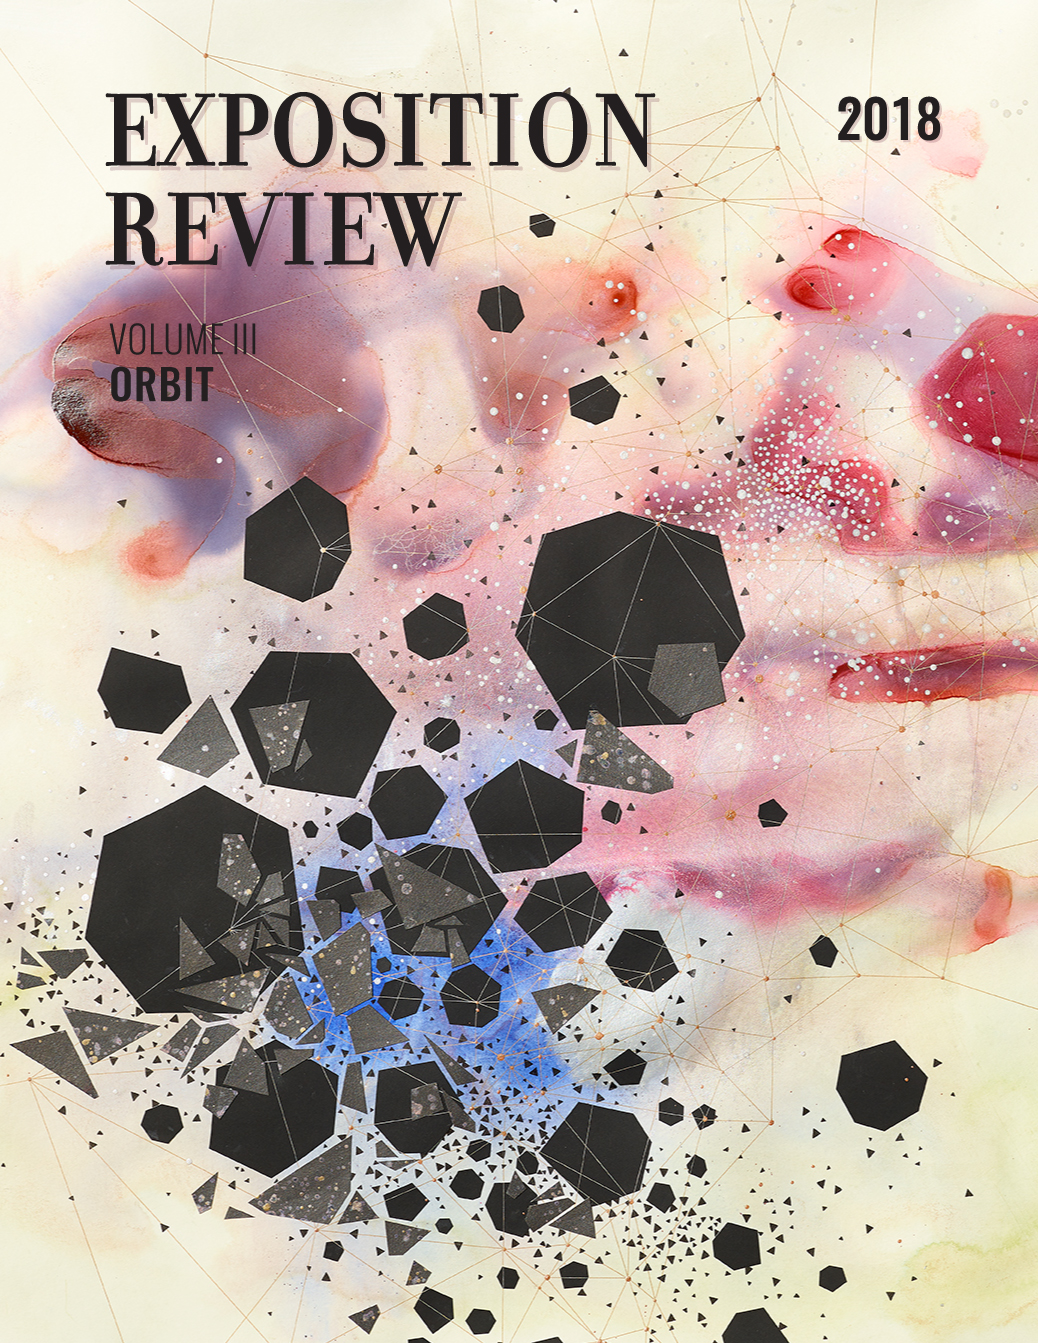 Exposition Review Vol. III: Orbit